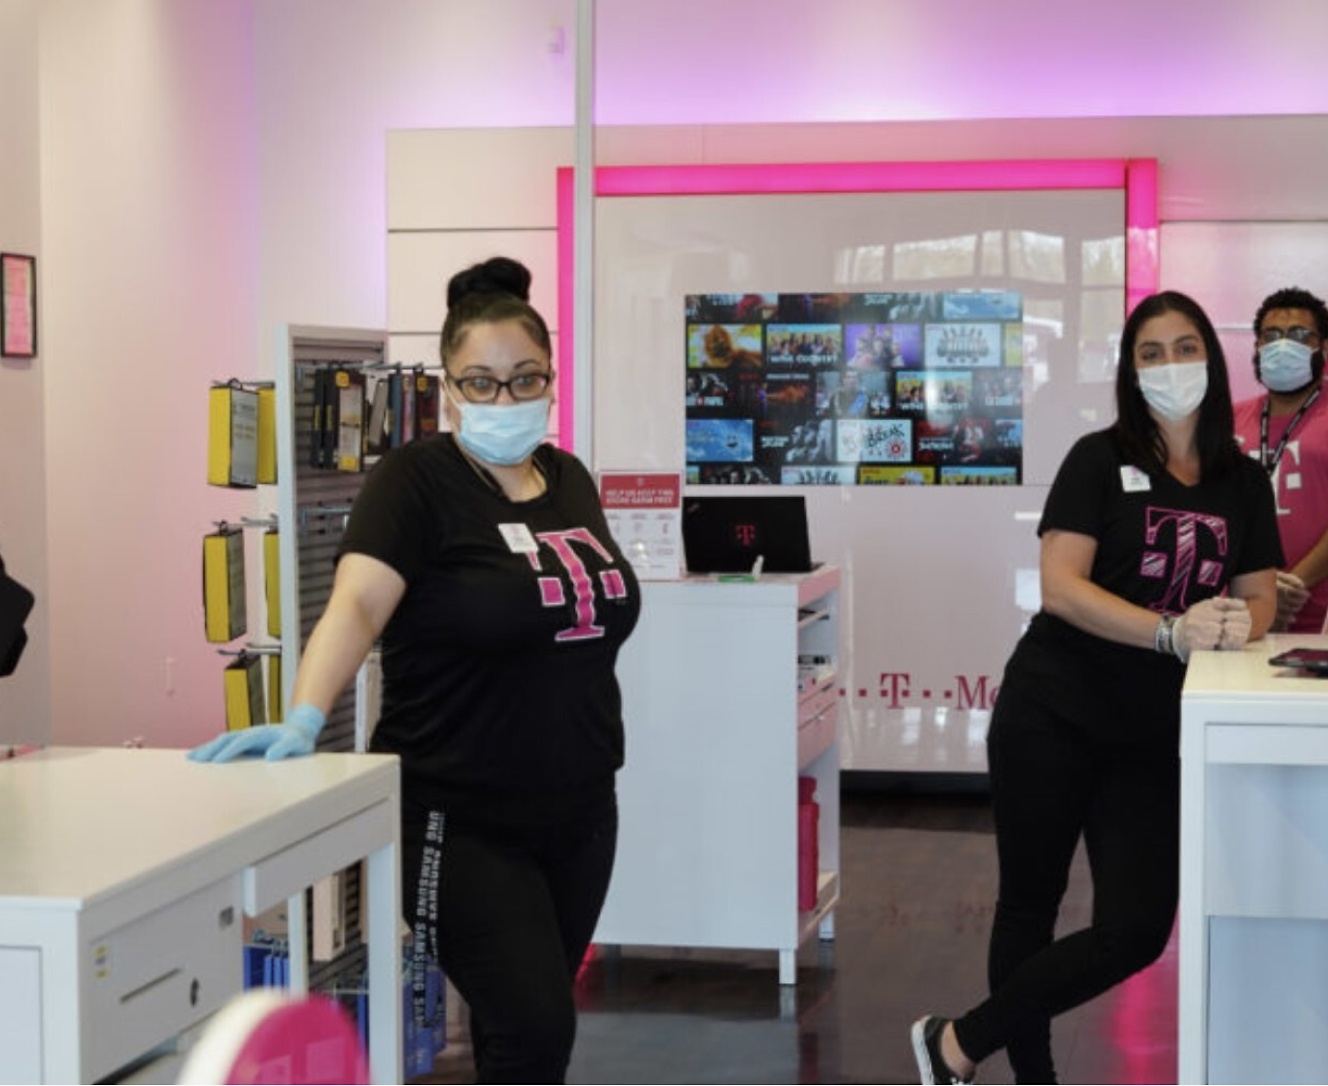 Een groep mensen die gezichtsmaskers dragen in een winkel.